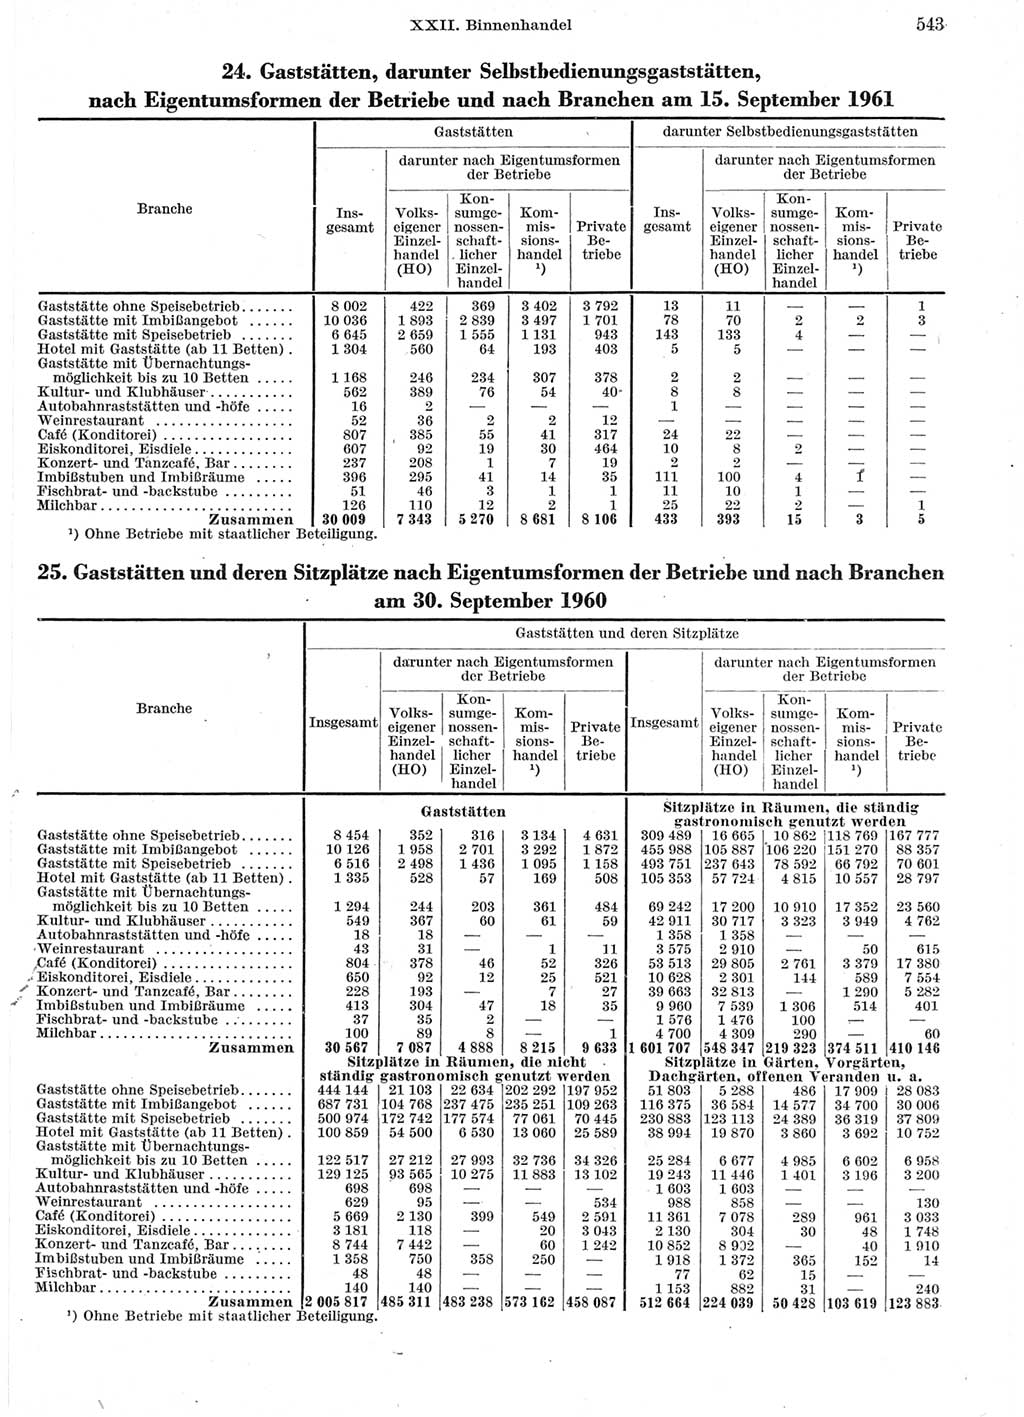 Statistisches Jahrbuch der Deutschen Demokratischen Republik (DDR) 1962, Seite 543 (Stat. Jb. DDR 1962, S. 543)